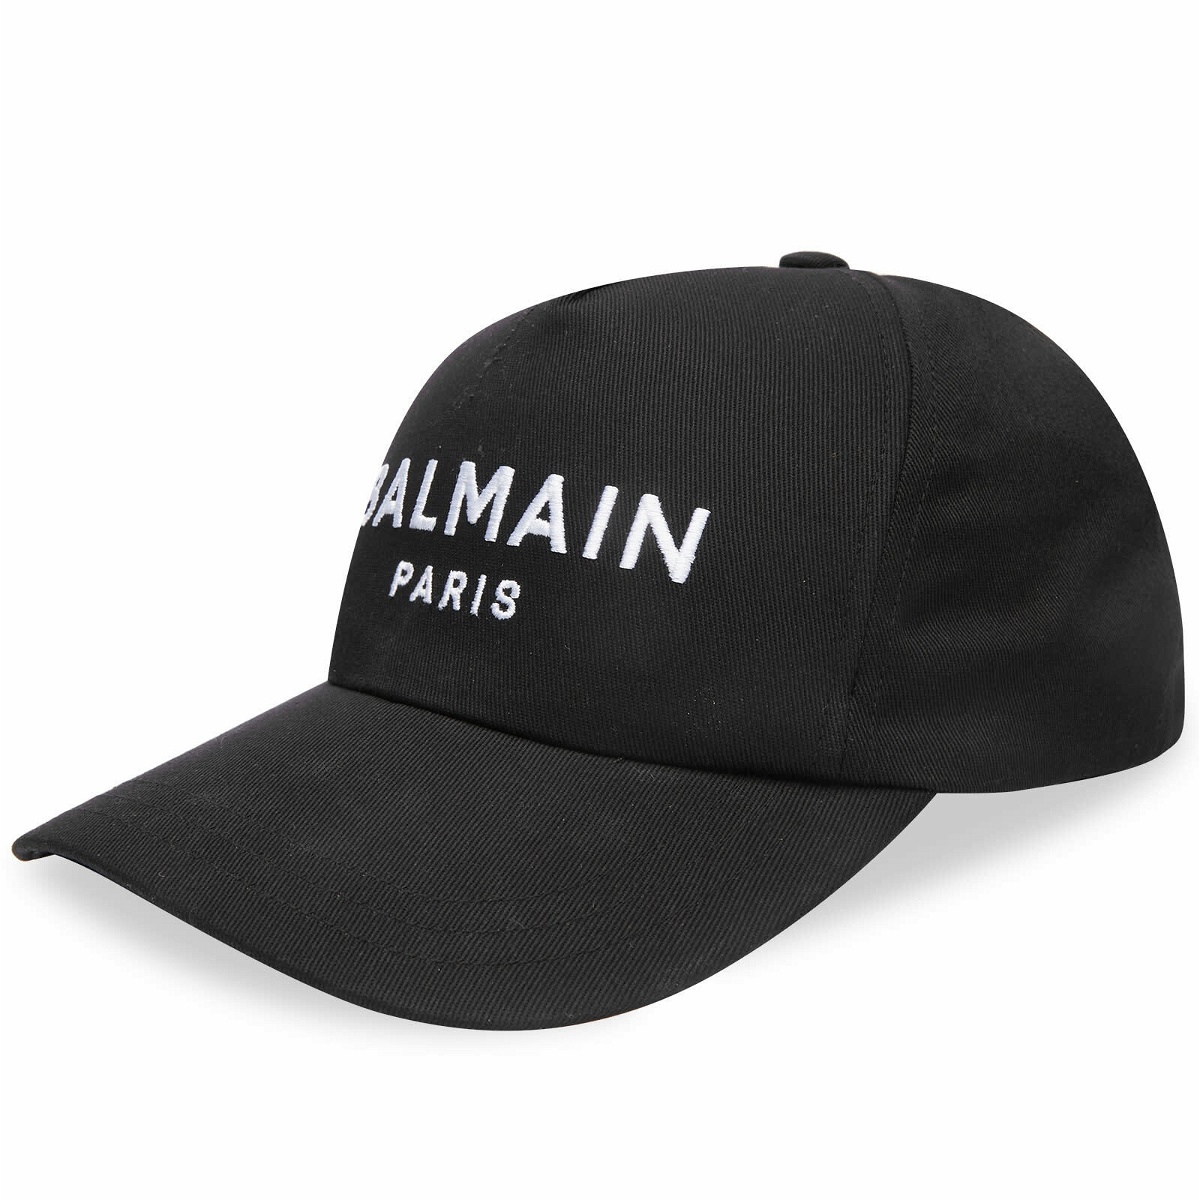 Balmain Men's Paris Logo Cap in Black/White Balmain